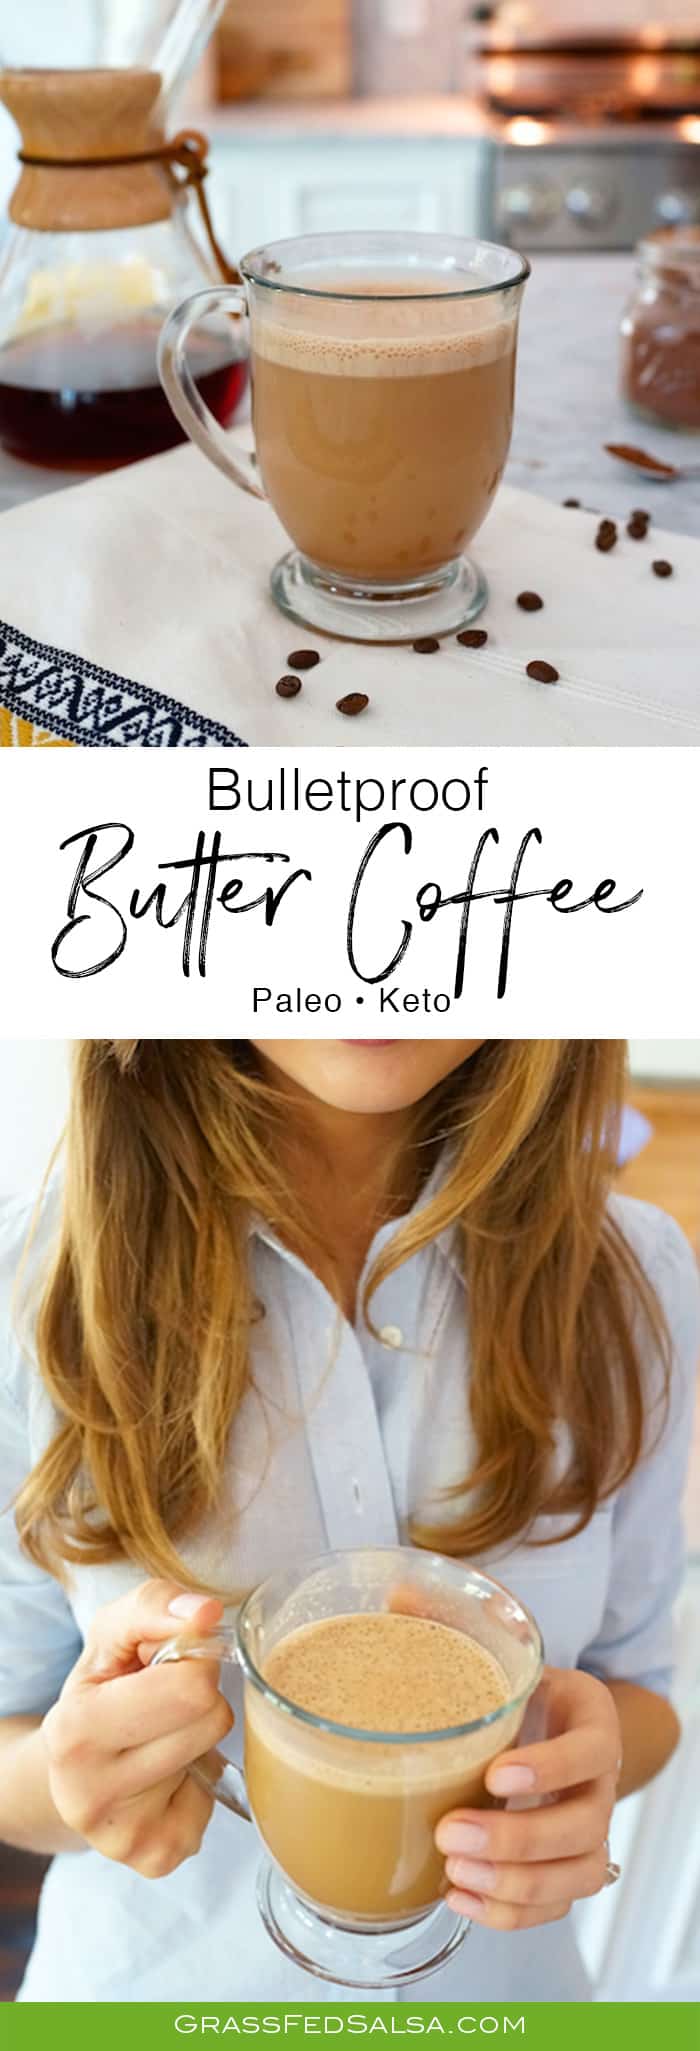 Bulletproof Butter Coffee Recipe